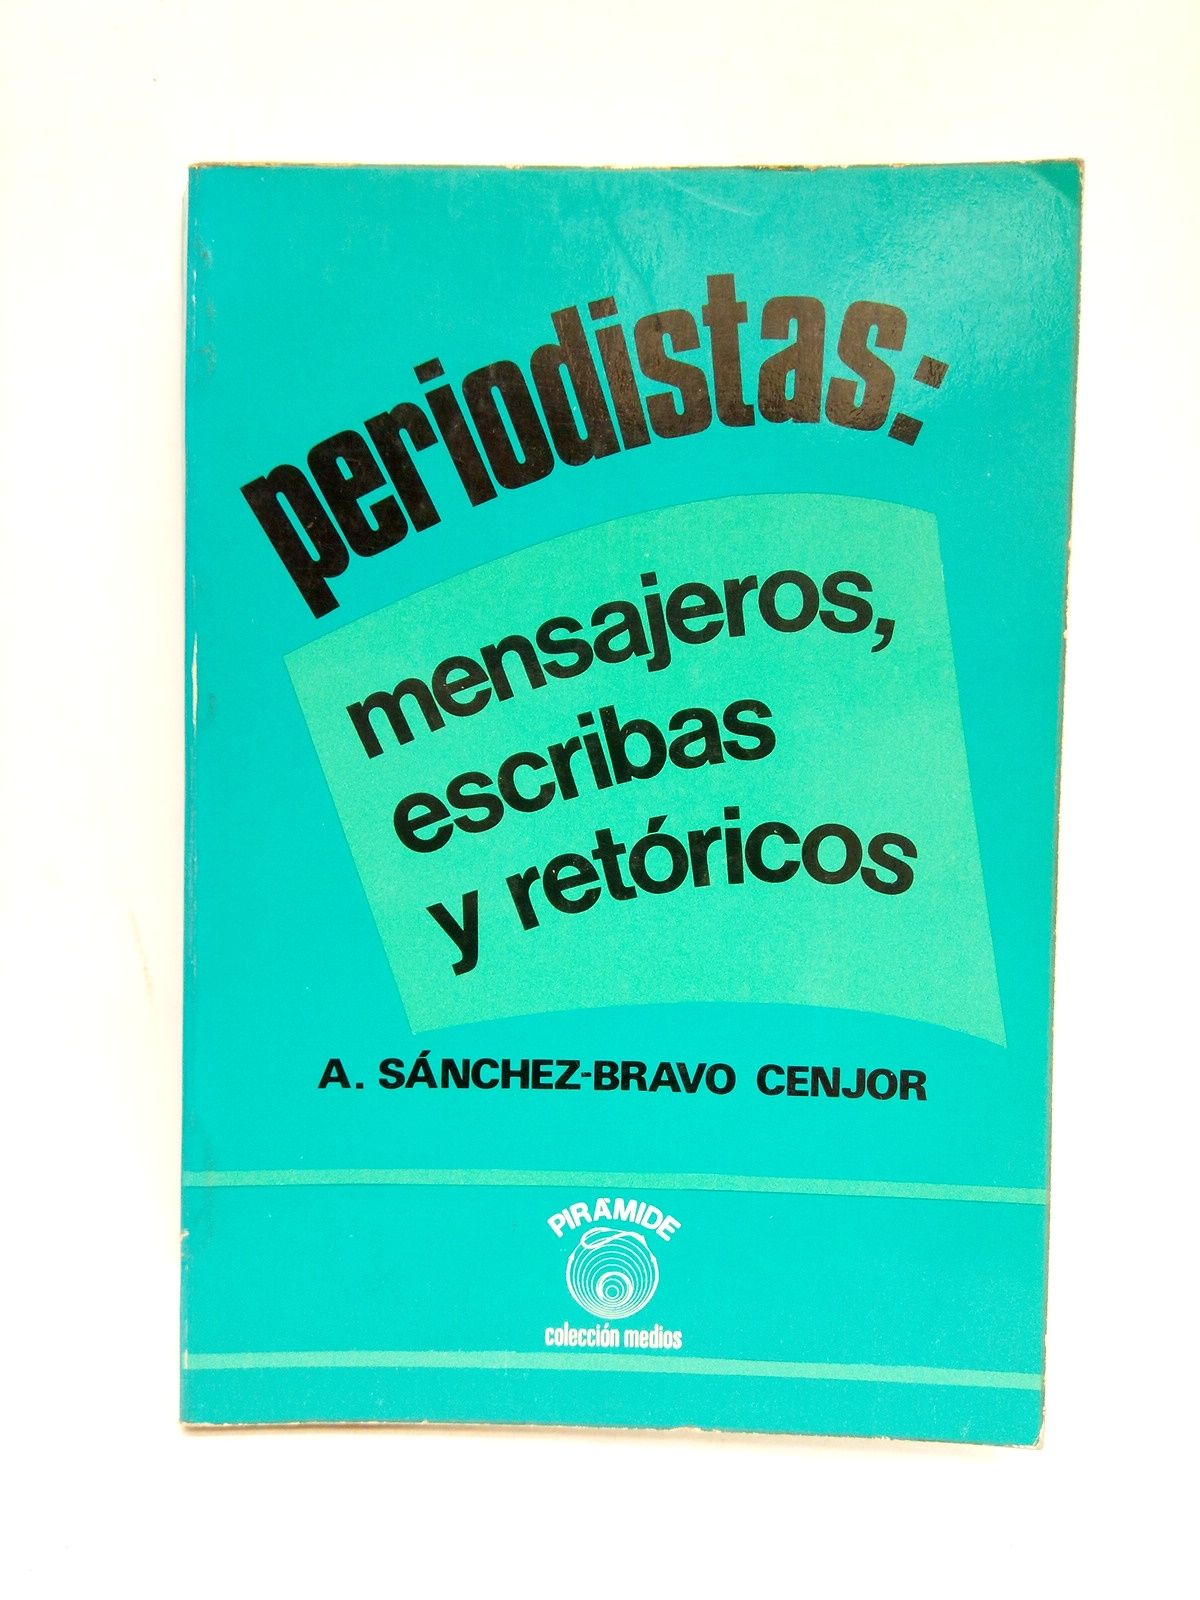 SANCHEZ-BRAVO CENJOR, Antonio - Periodistas: mensajeros, escribas y retricos /  Prlogo de Juan Beneyto